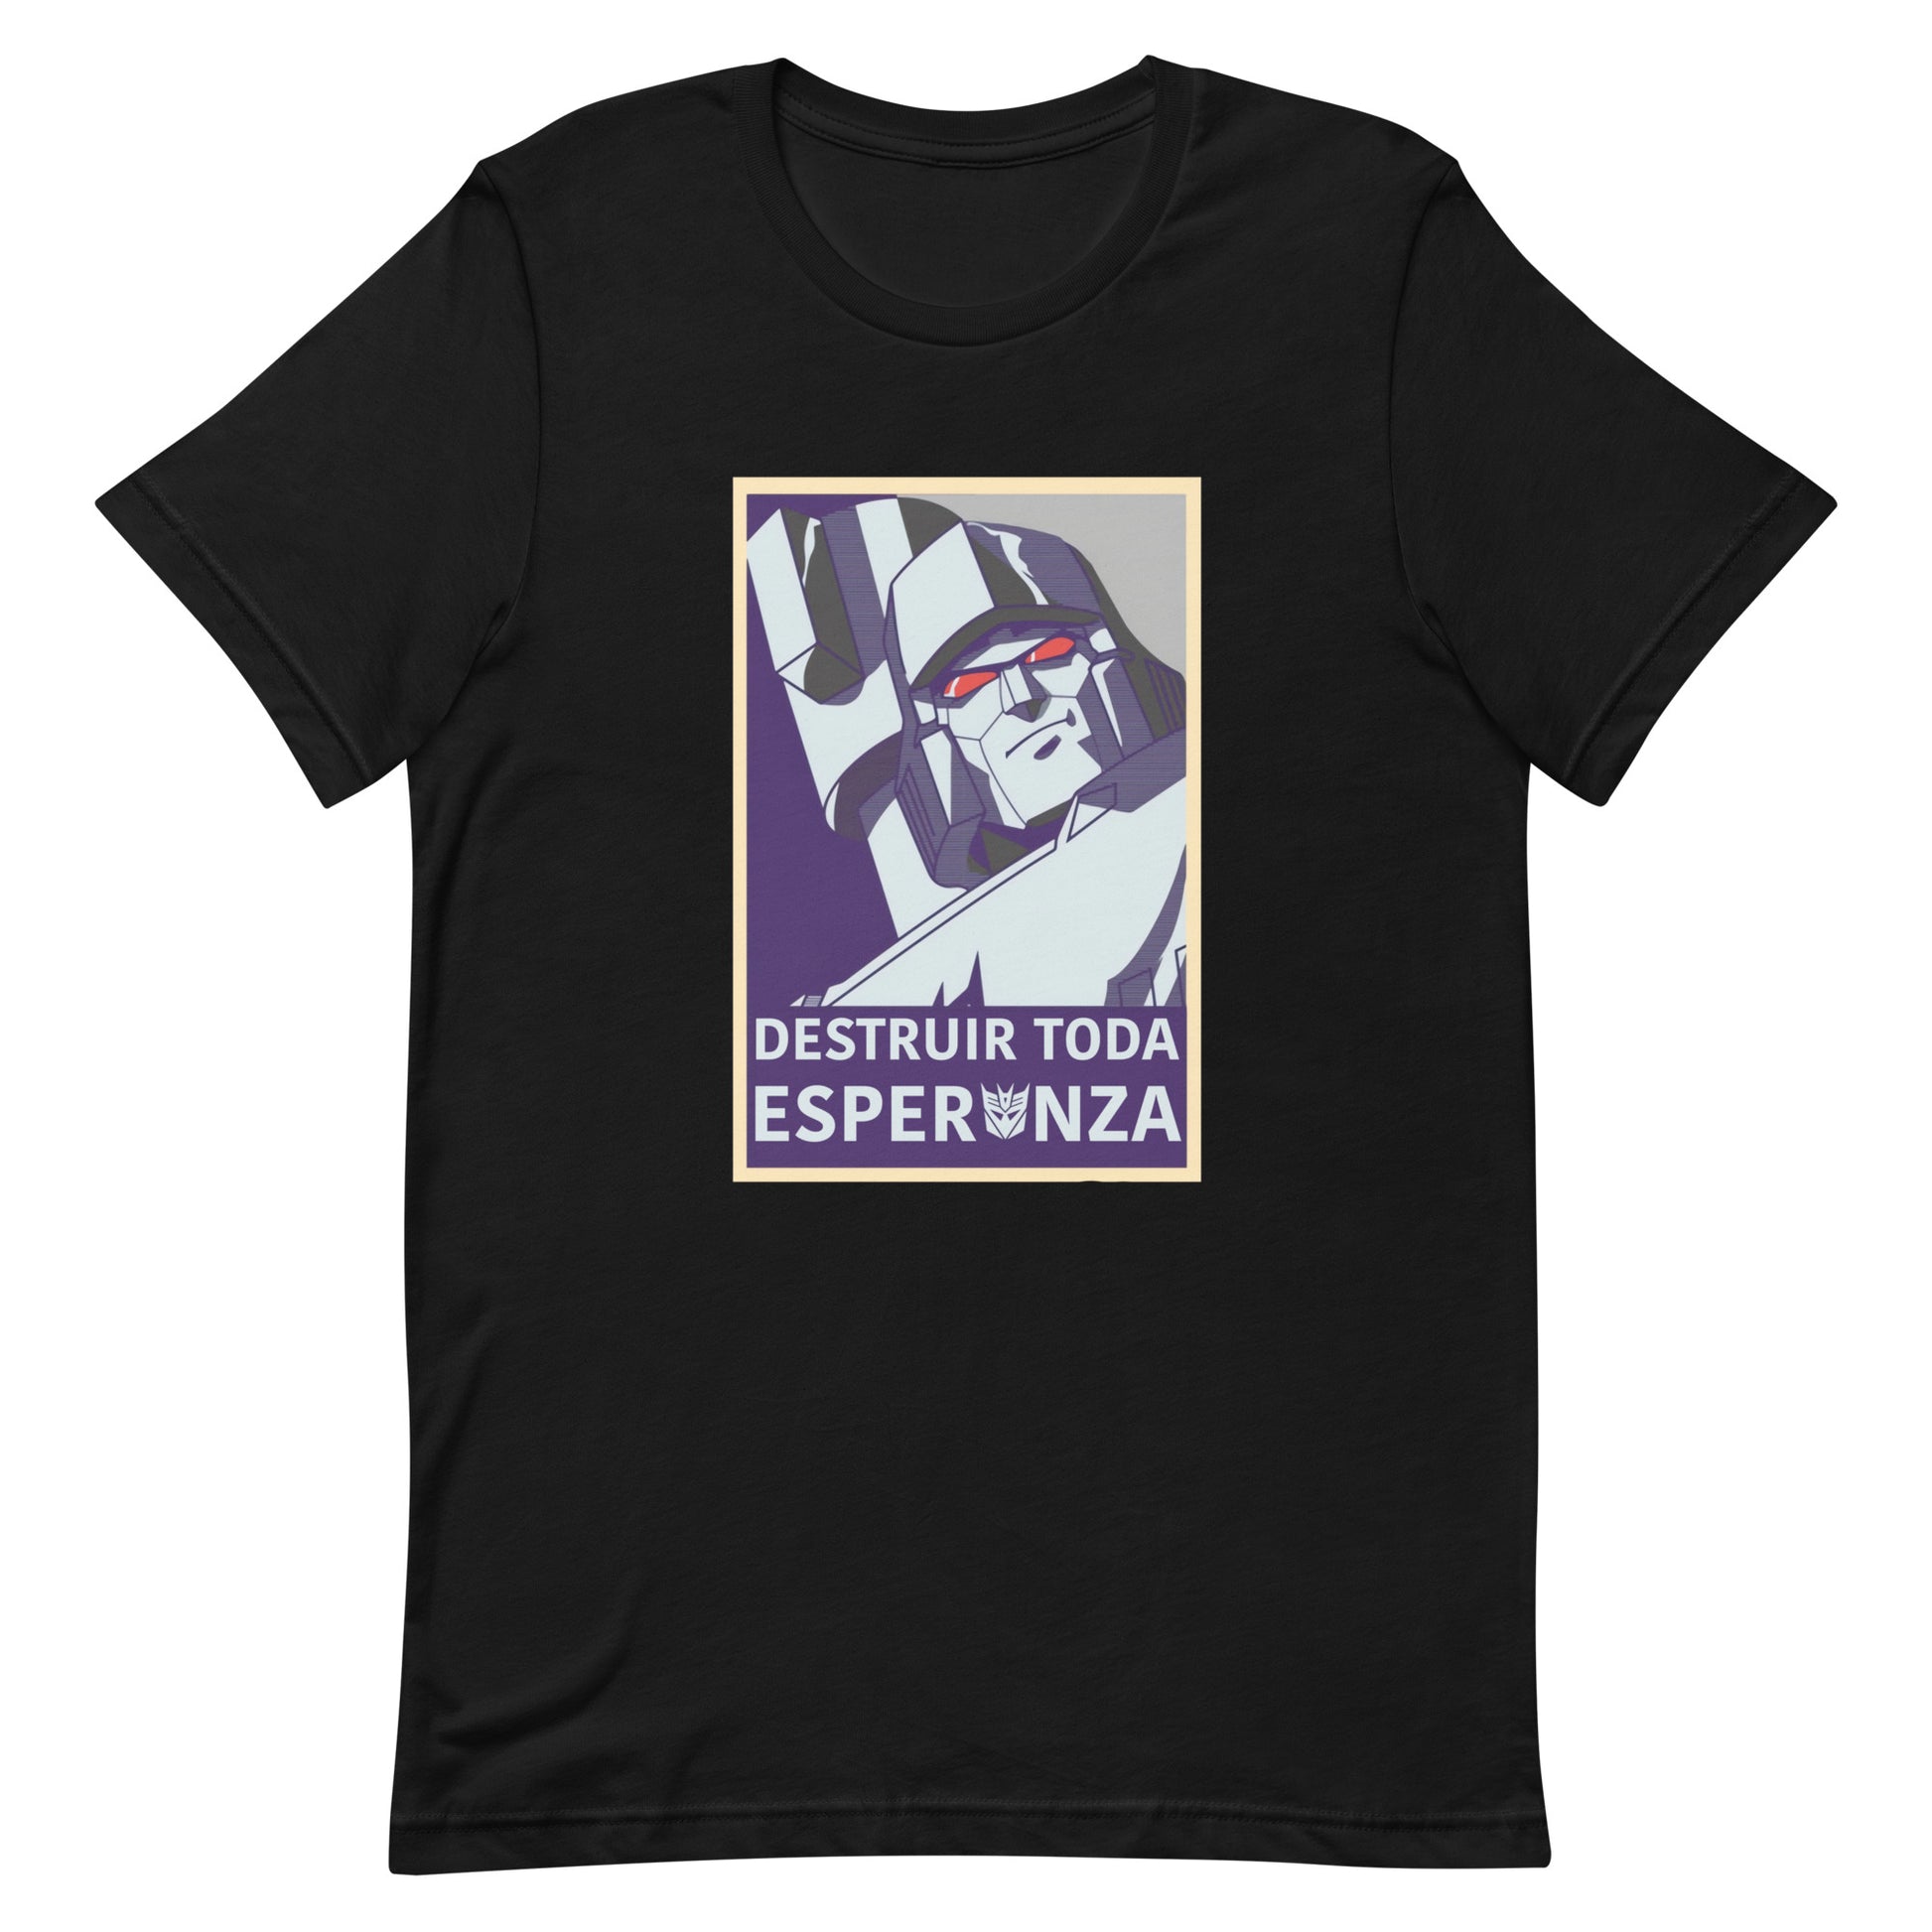 ¡Compra el mejor merchandising en Superstar! Encuentra diseños únicos y de alta calidad en playeras,Camiseta Destruir toda Esperanza